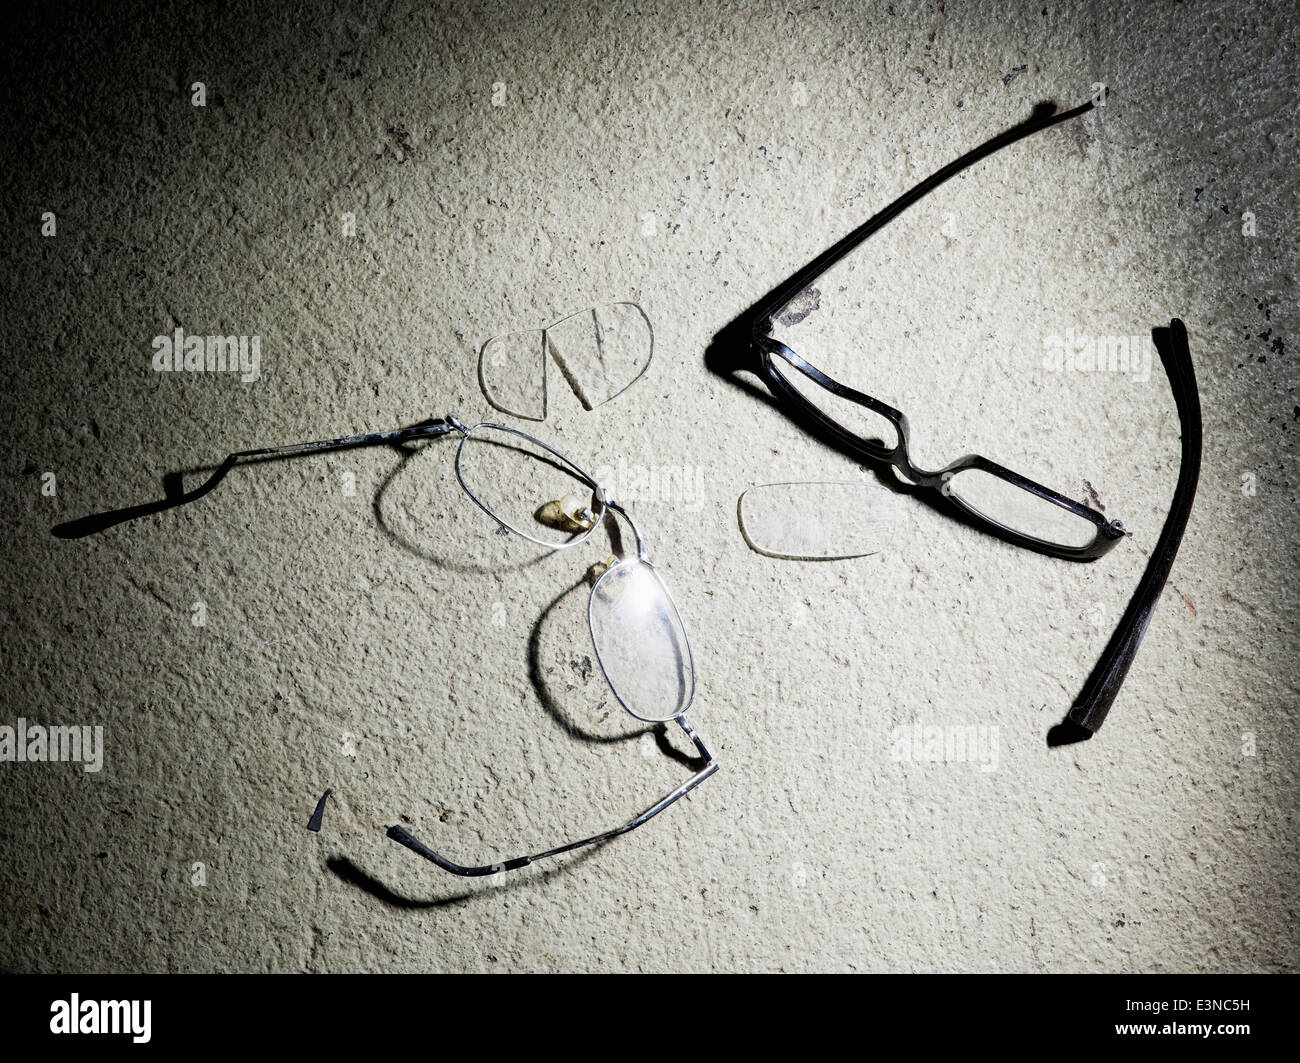 Разбили очко. Сломанные очки. Сломанные солнцезащитные очки. Разбитые солнечные очки. Разбитые очки рисунок.